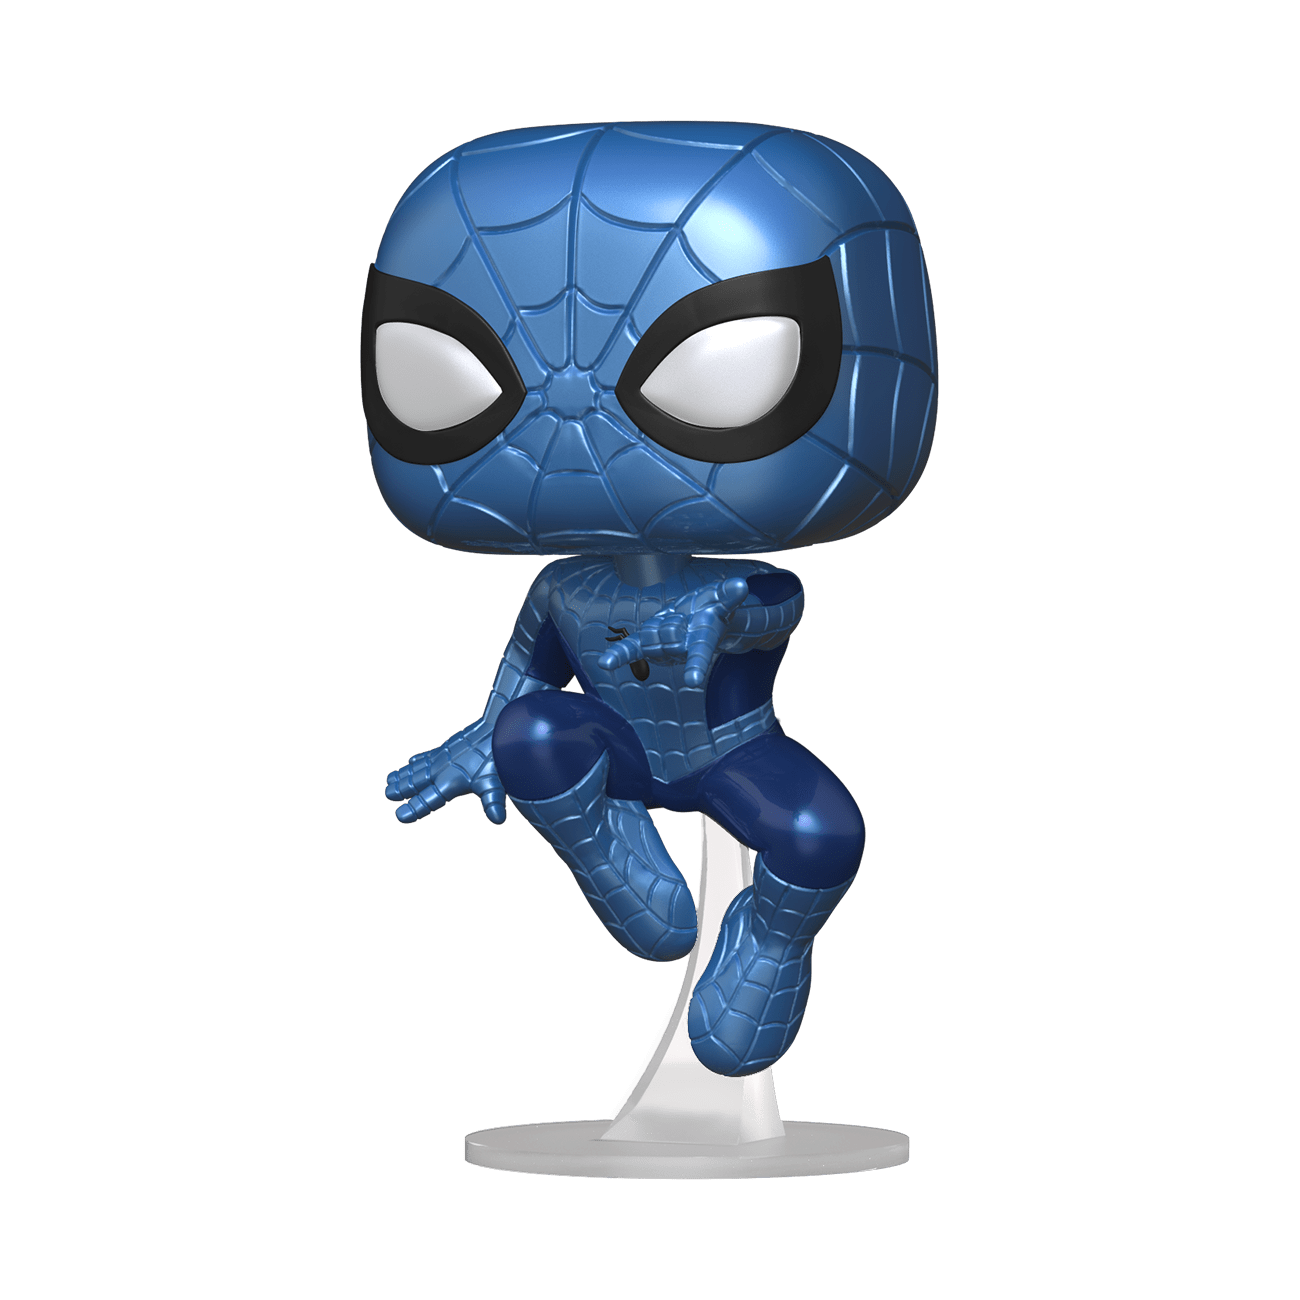 Funko Pop Spider Man Metallic Marvel Make A Wish